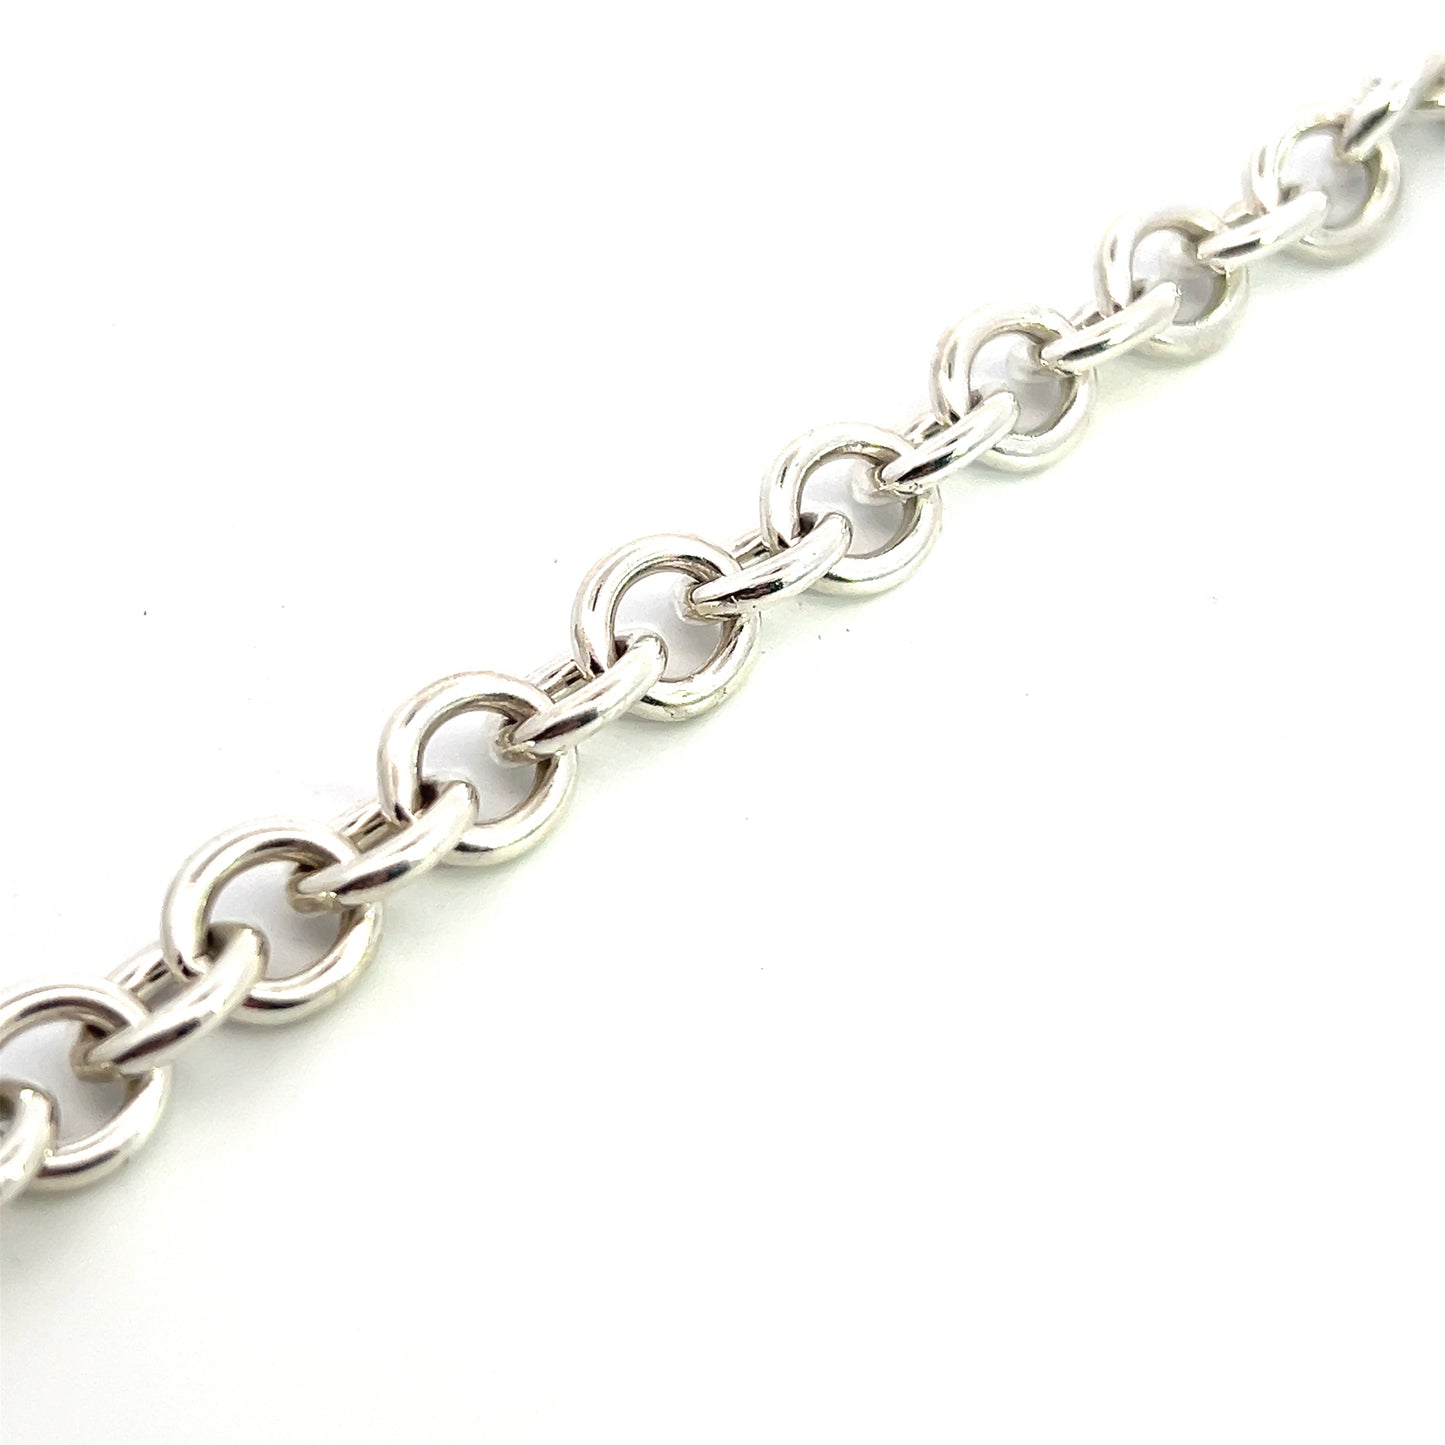 Tiffany & Co Estate Bracelet 6.75" Sterling Silver TIF526 - Certified Fine Jewelry